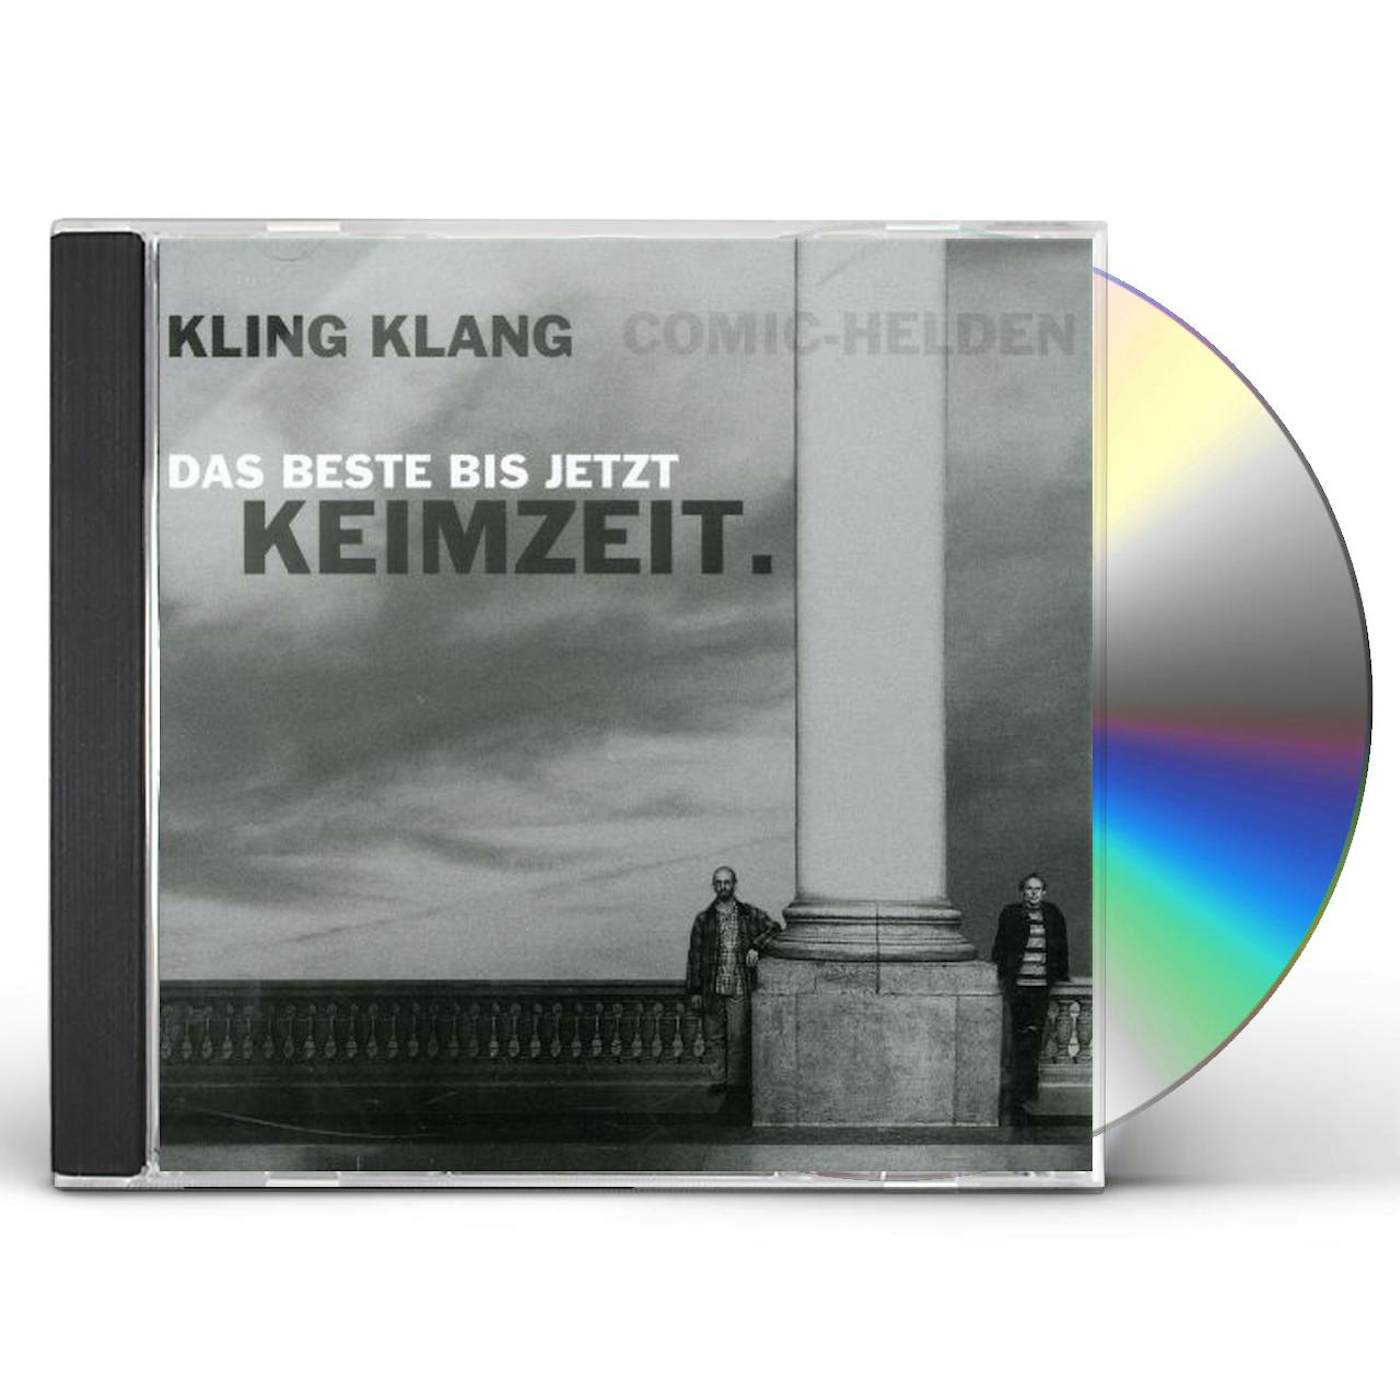 Keimzeit KLING KLANG, COMIC-HELDEN CD